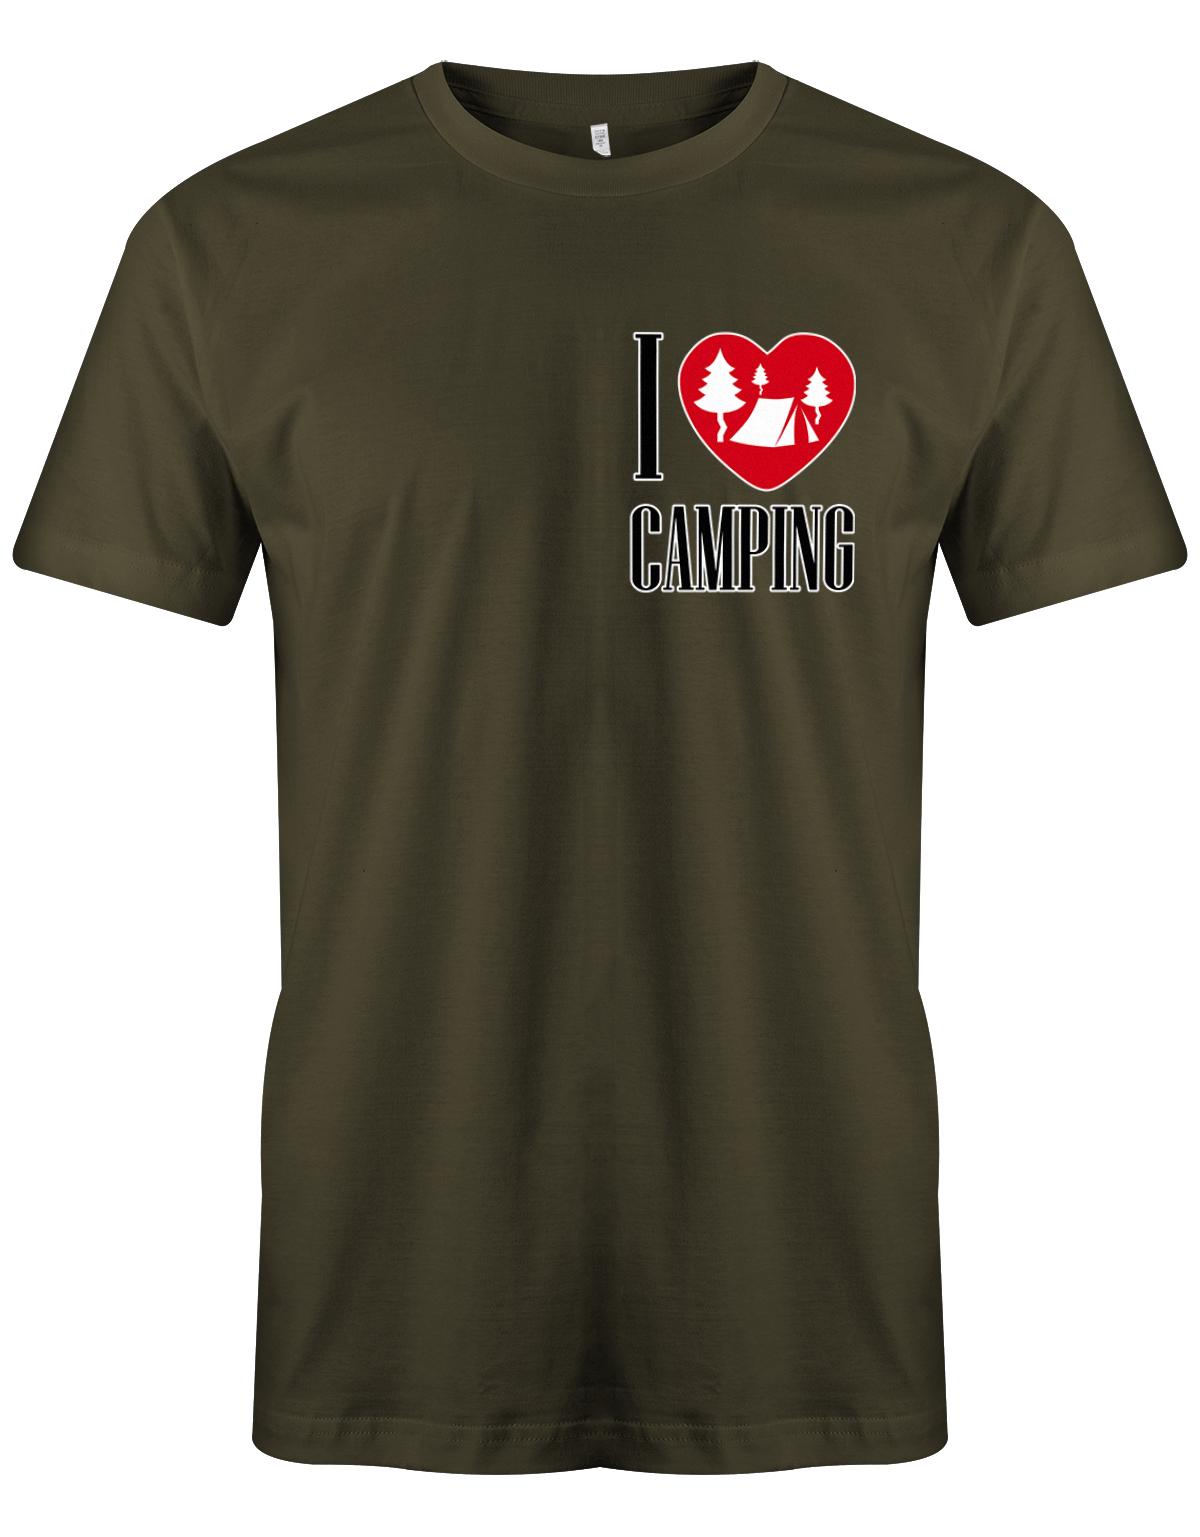 I-love-Camping-Herren-Shirt-army